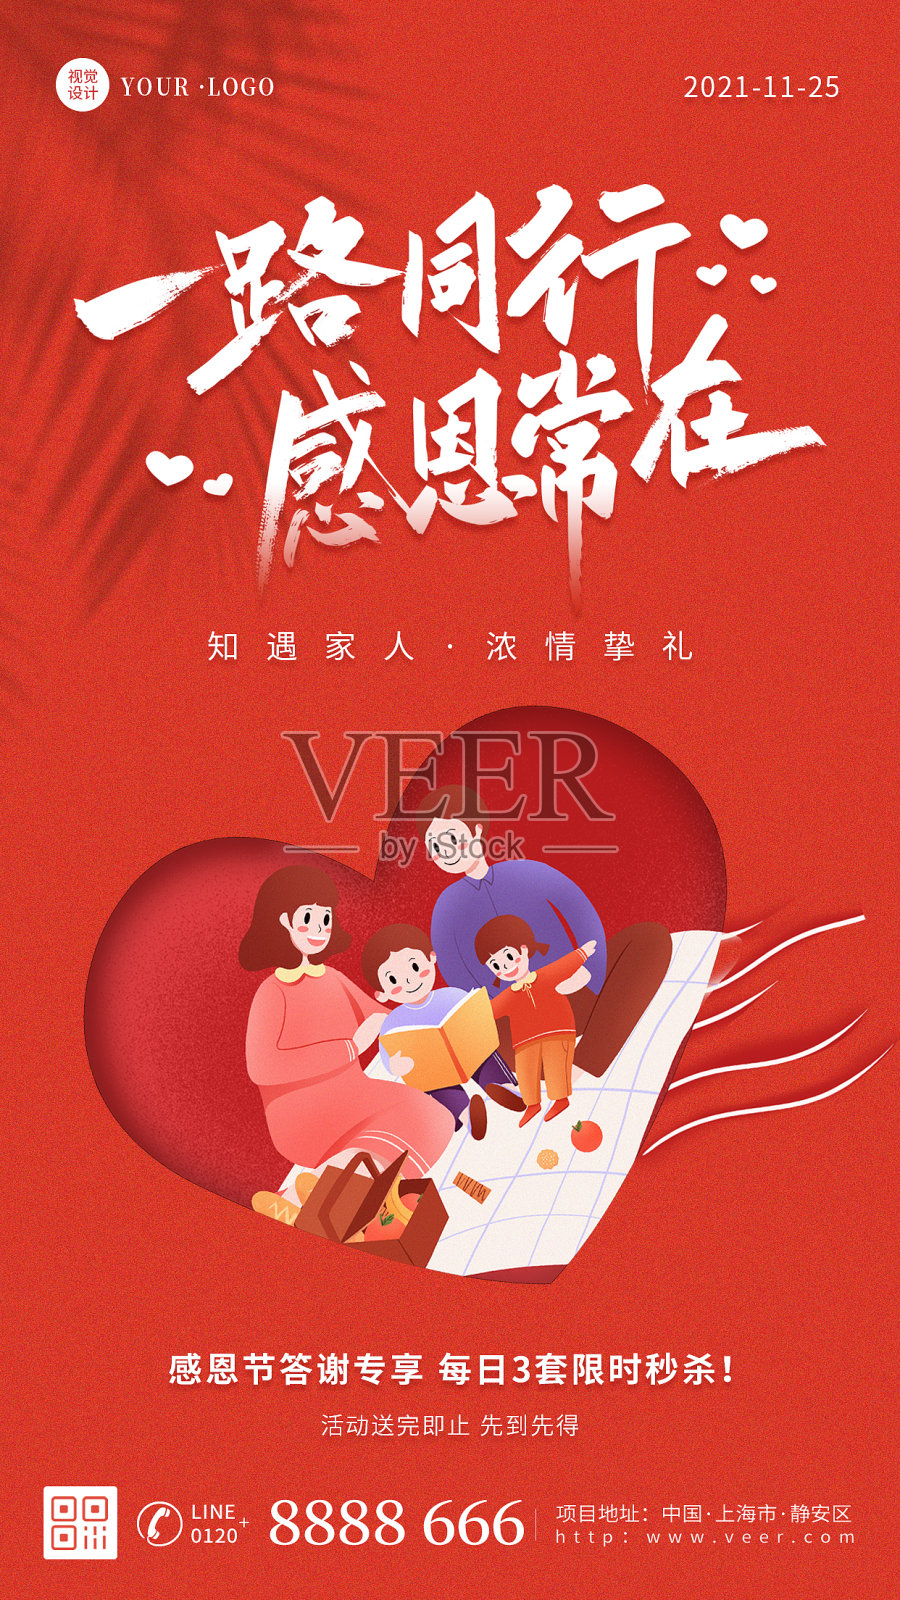 红色大气插画扁平感恩节节日祝福宣传营销手机海报设计模板素材